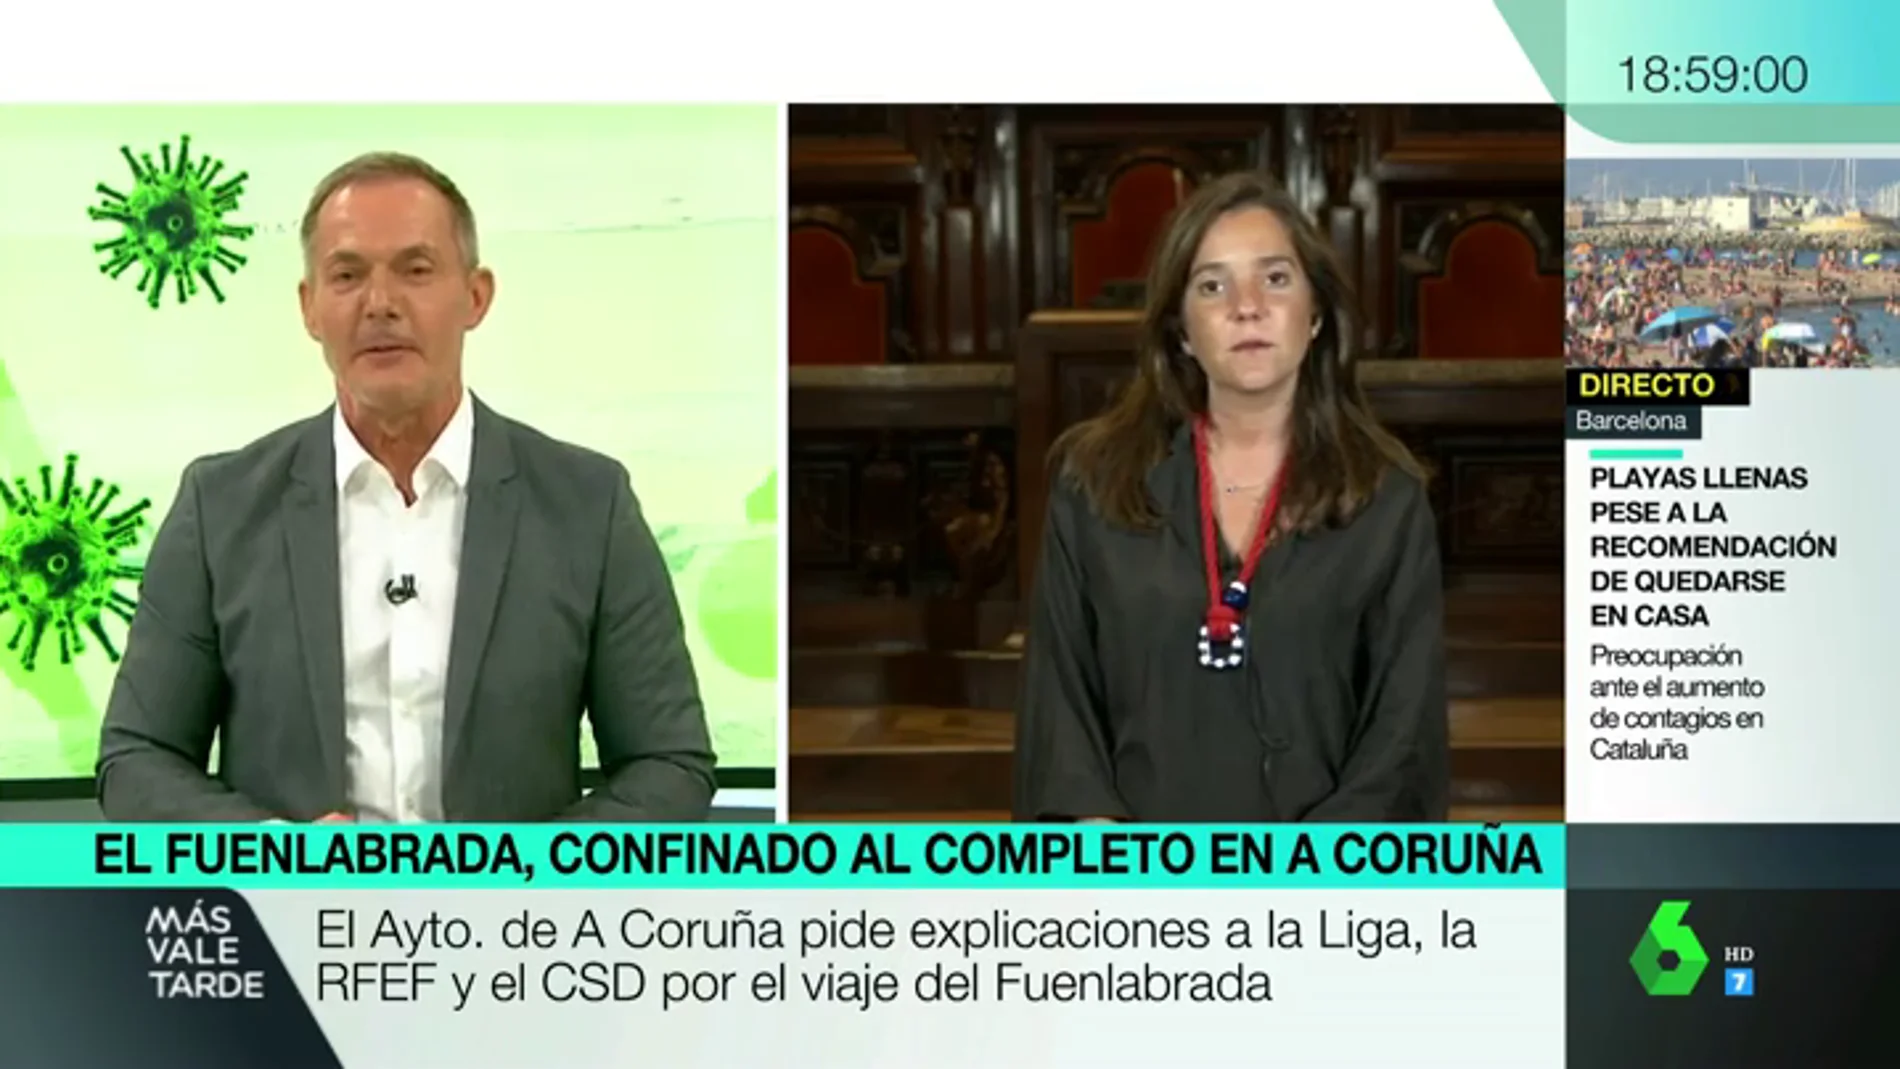 La alcaldesa de A Coruña afirma que aun no se puede hablar de rebrote por los casos del Fuenlabrada: "Es una situación limitada"